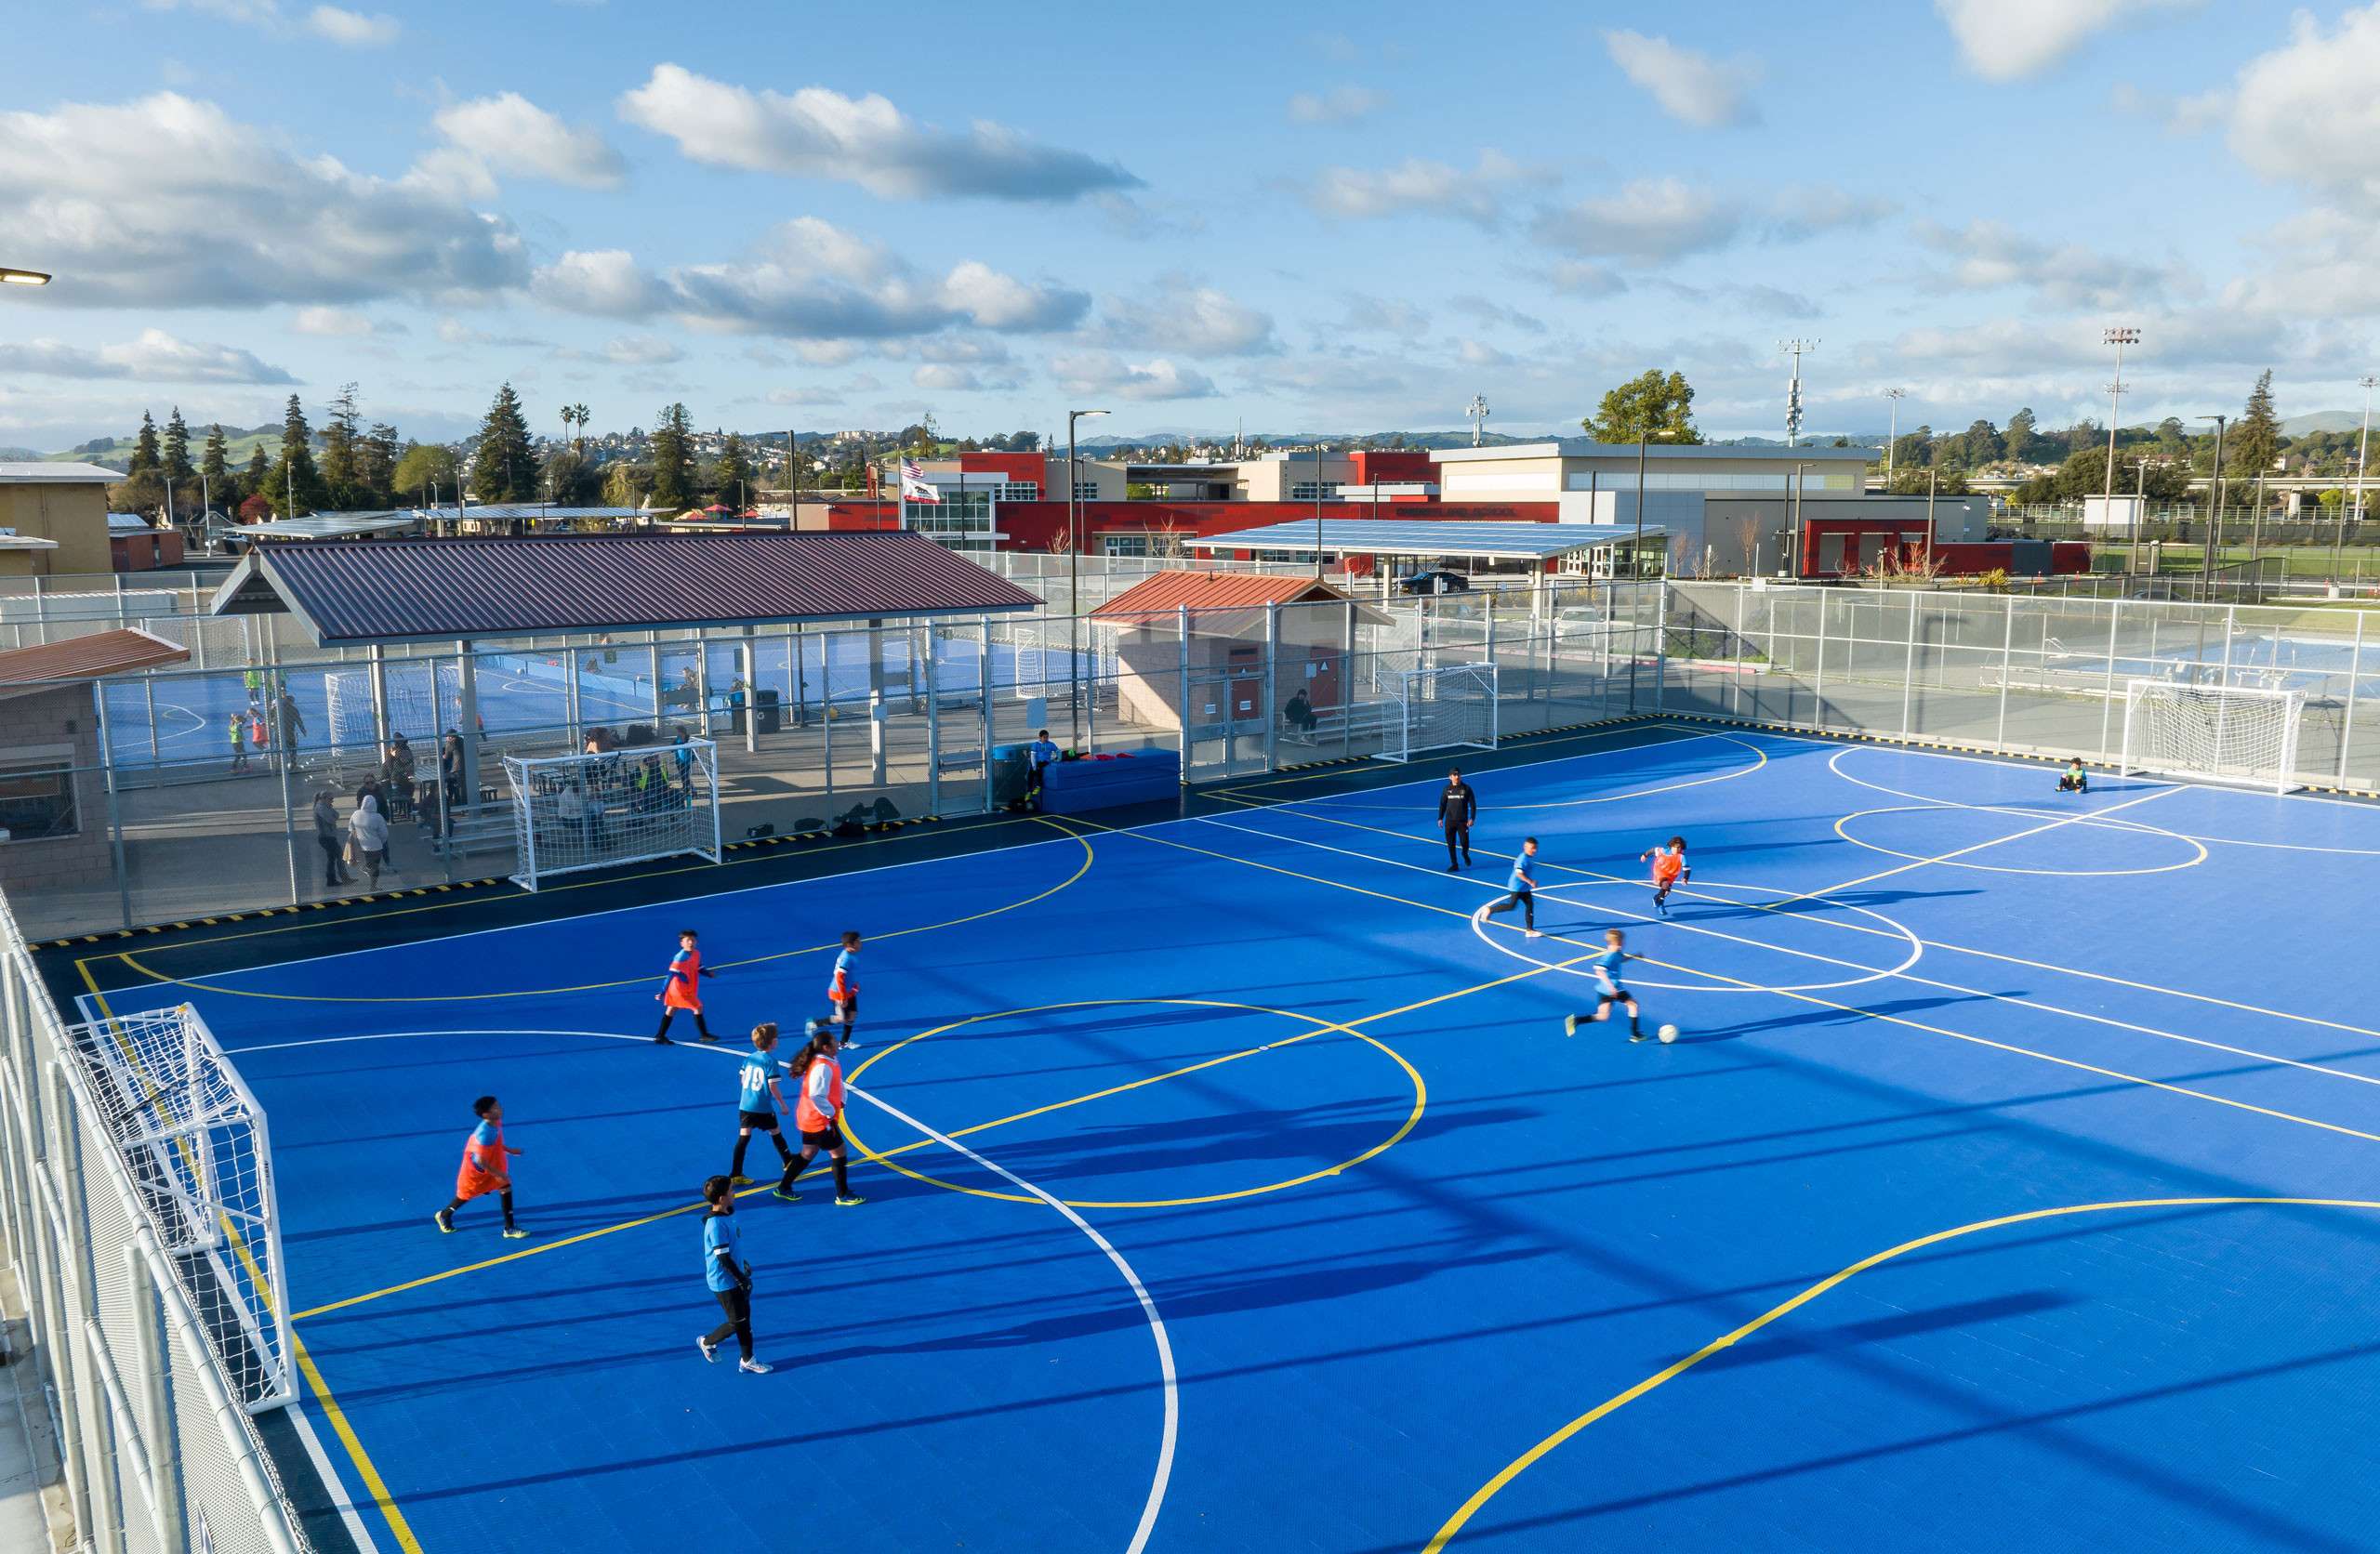 Sunset Futsal Courts